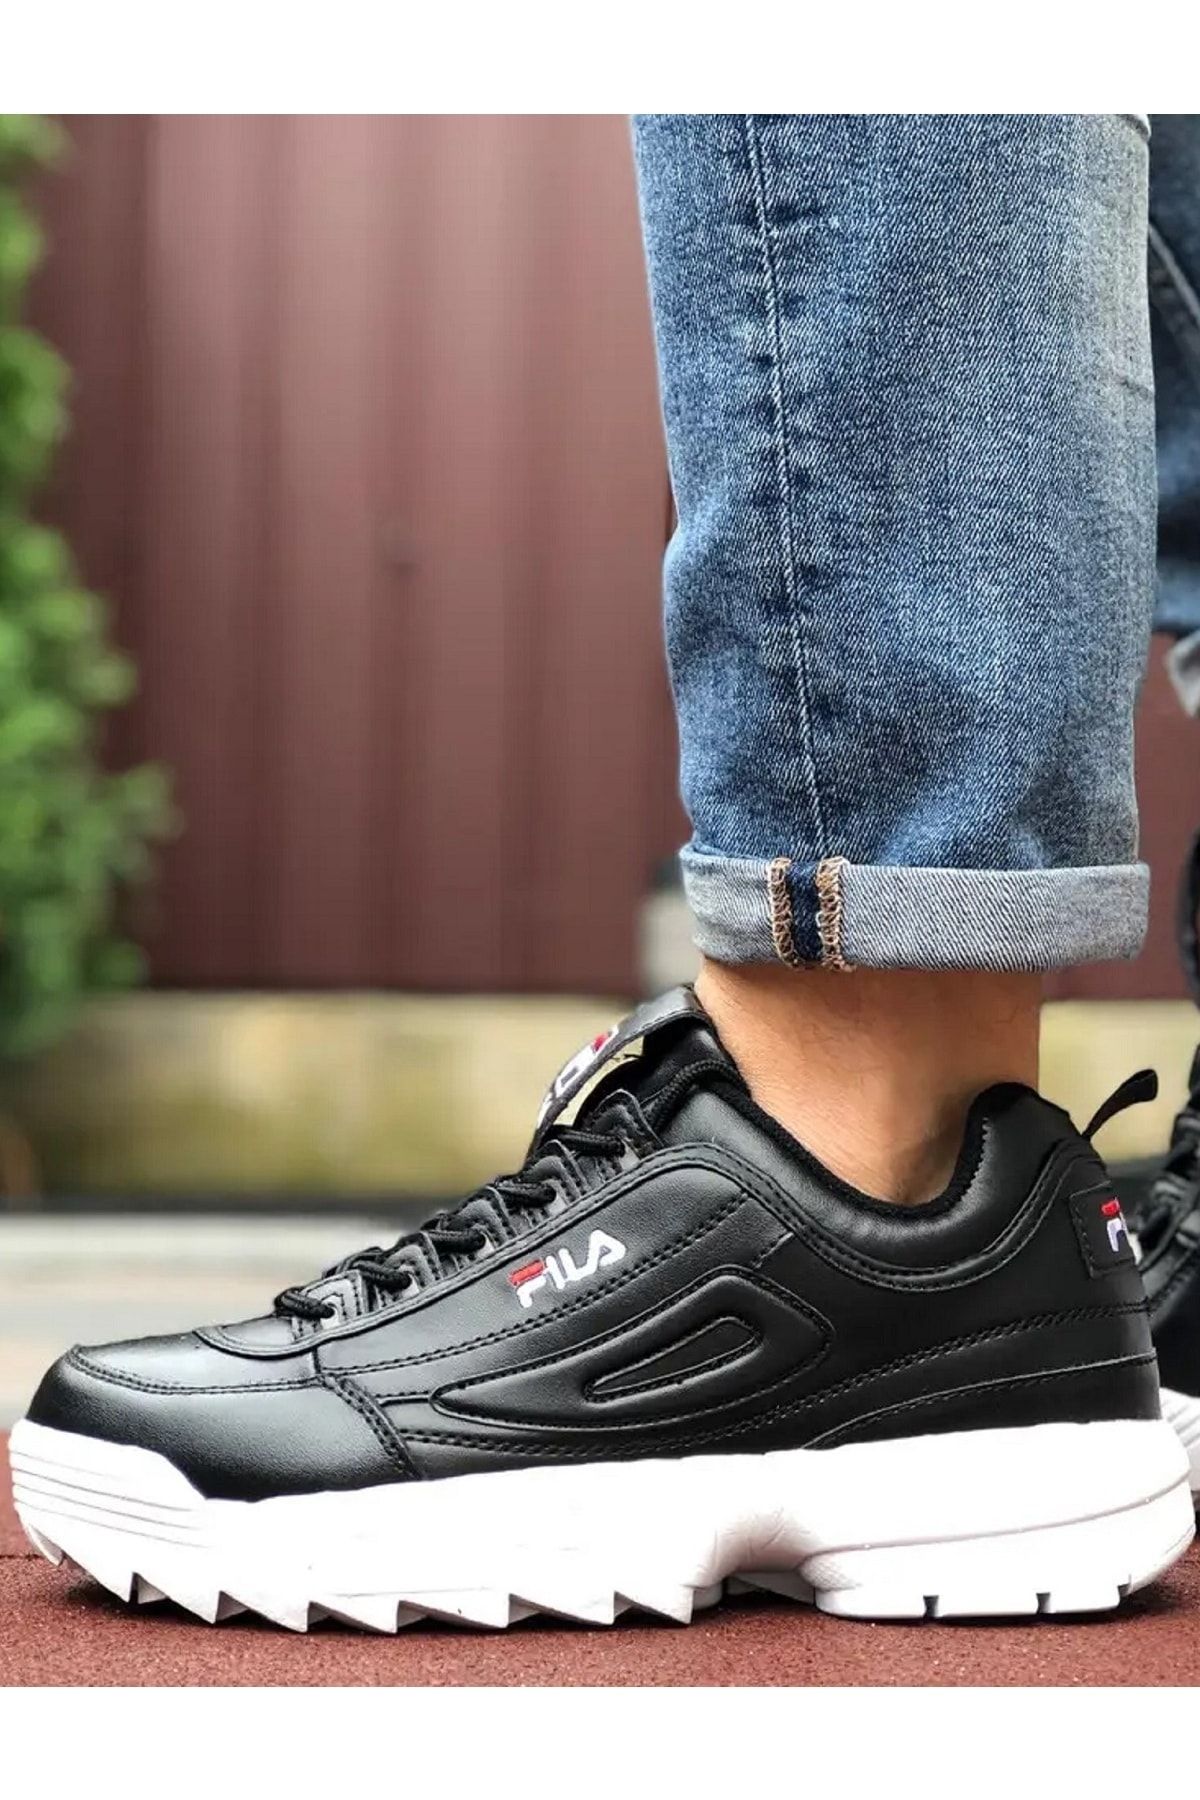 Fila Disruptor Low Unisex Sneaker Siyah Yüksek Taban Günlük Spor Ayakkabı